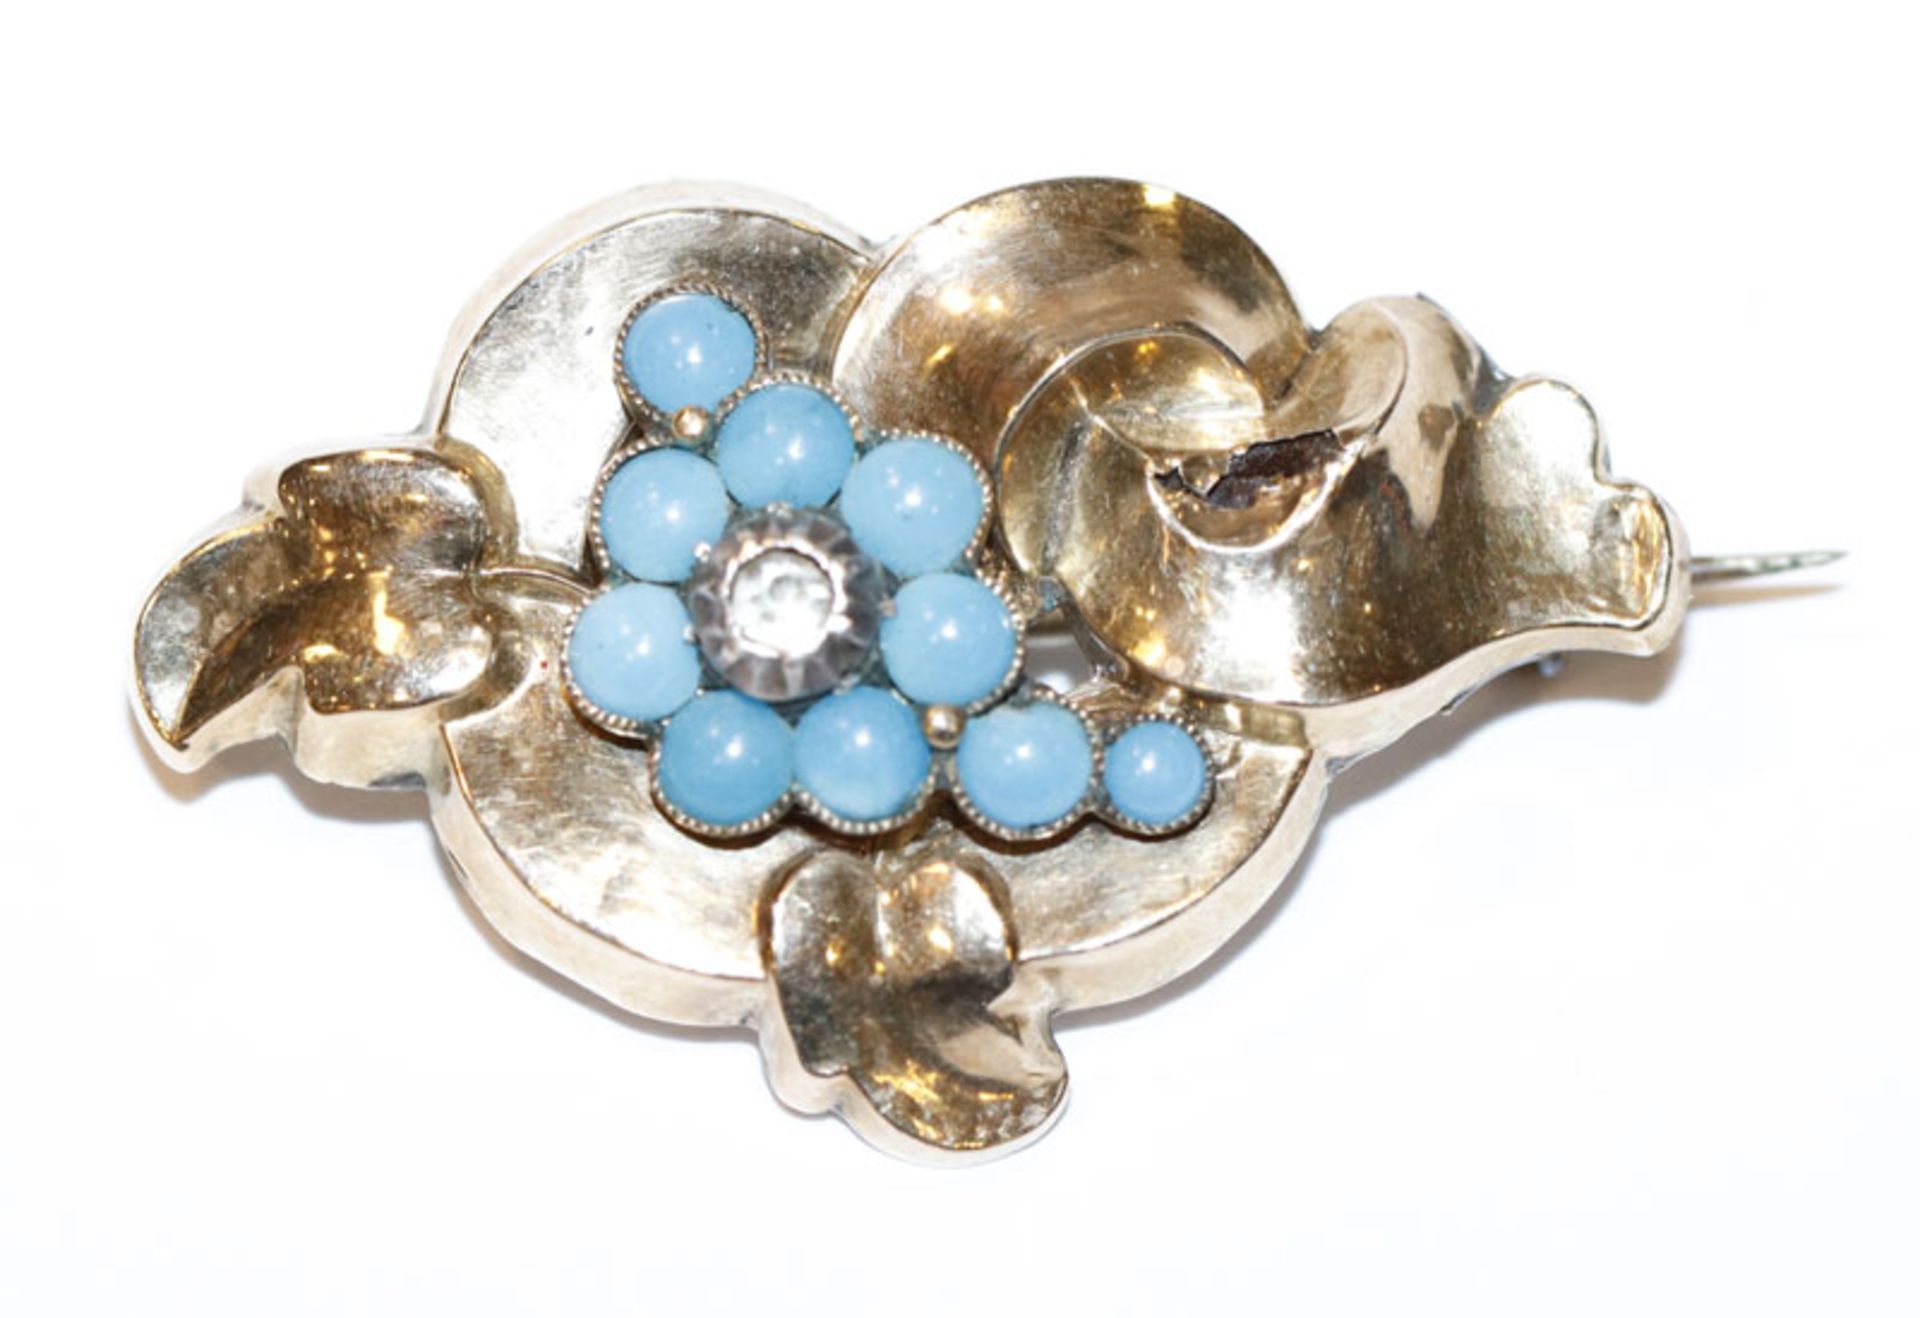 Silber/Schaumgold Trachtenbrosche um 1900, beschädigt, eine Perle fehlt, B 4,5 cm